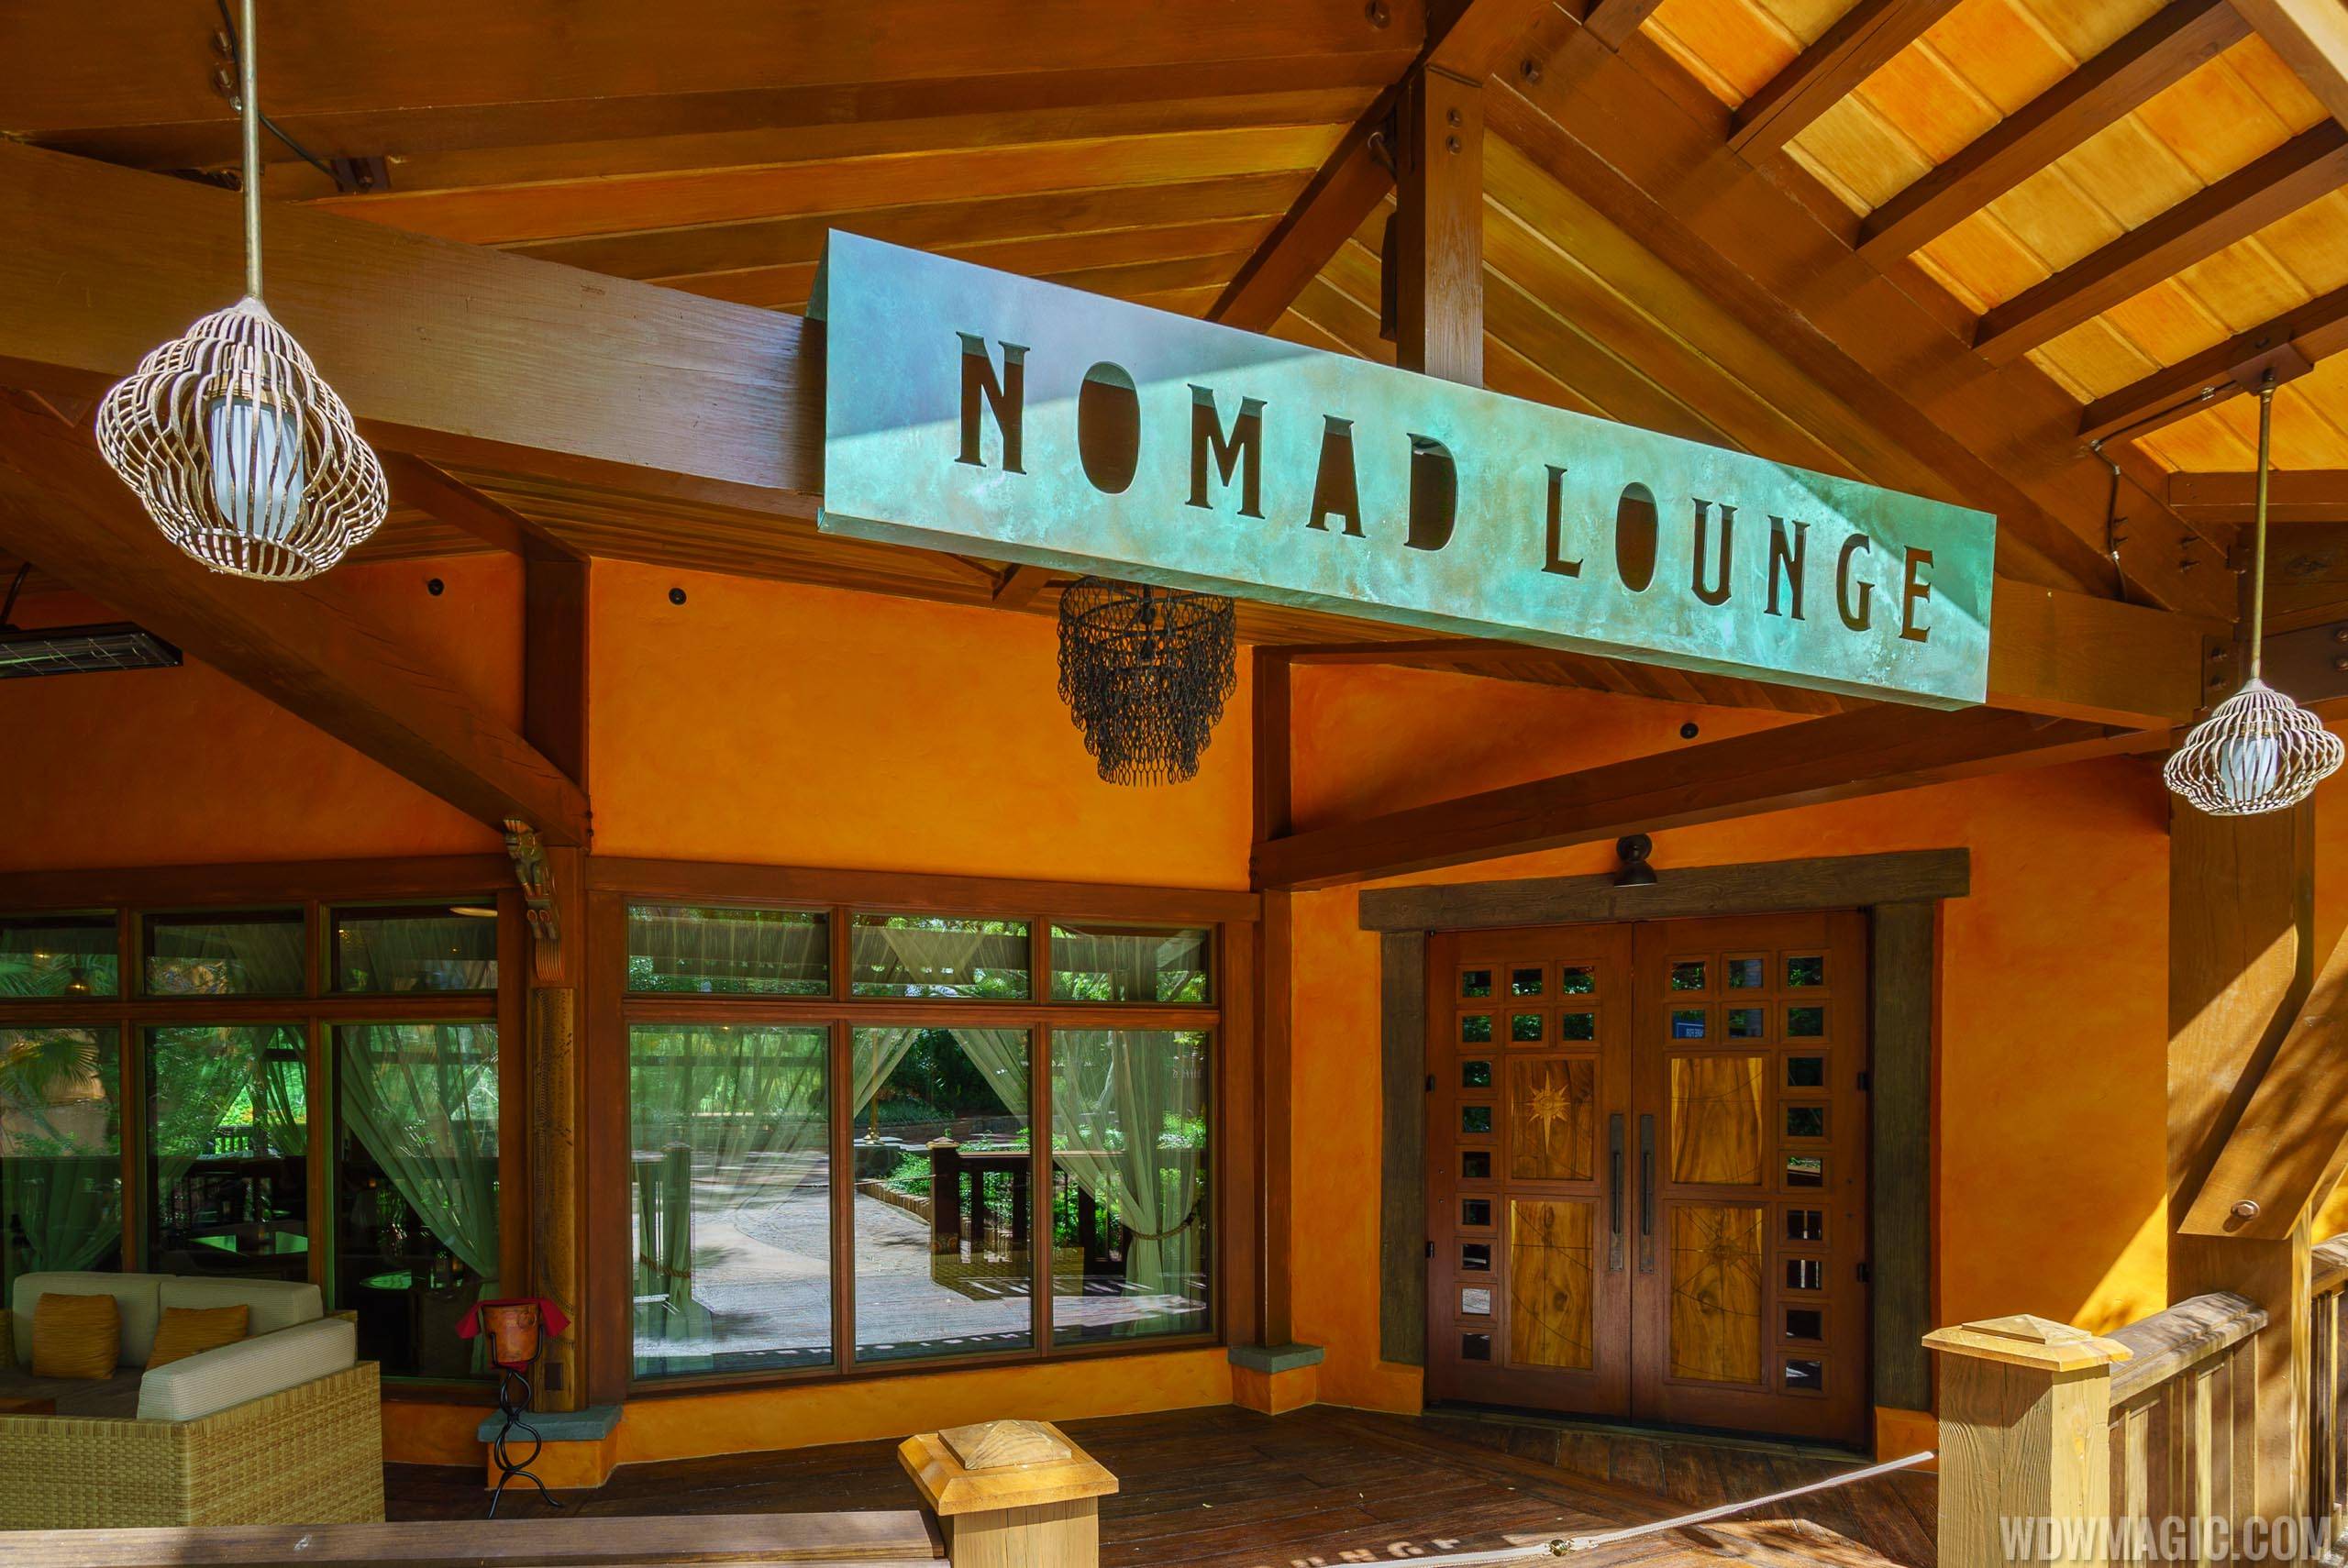 nomad lounge